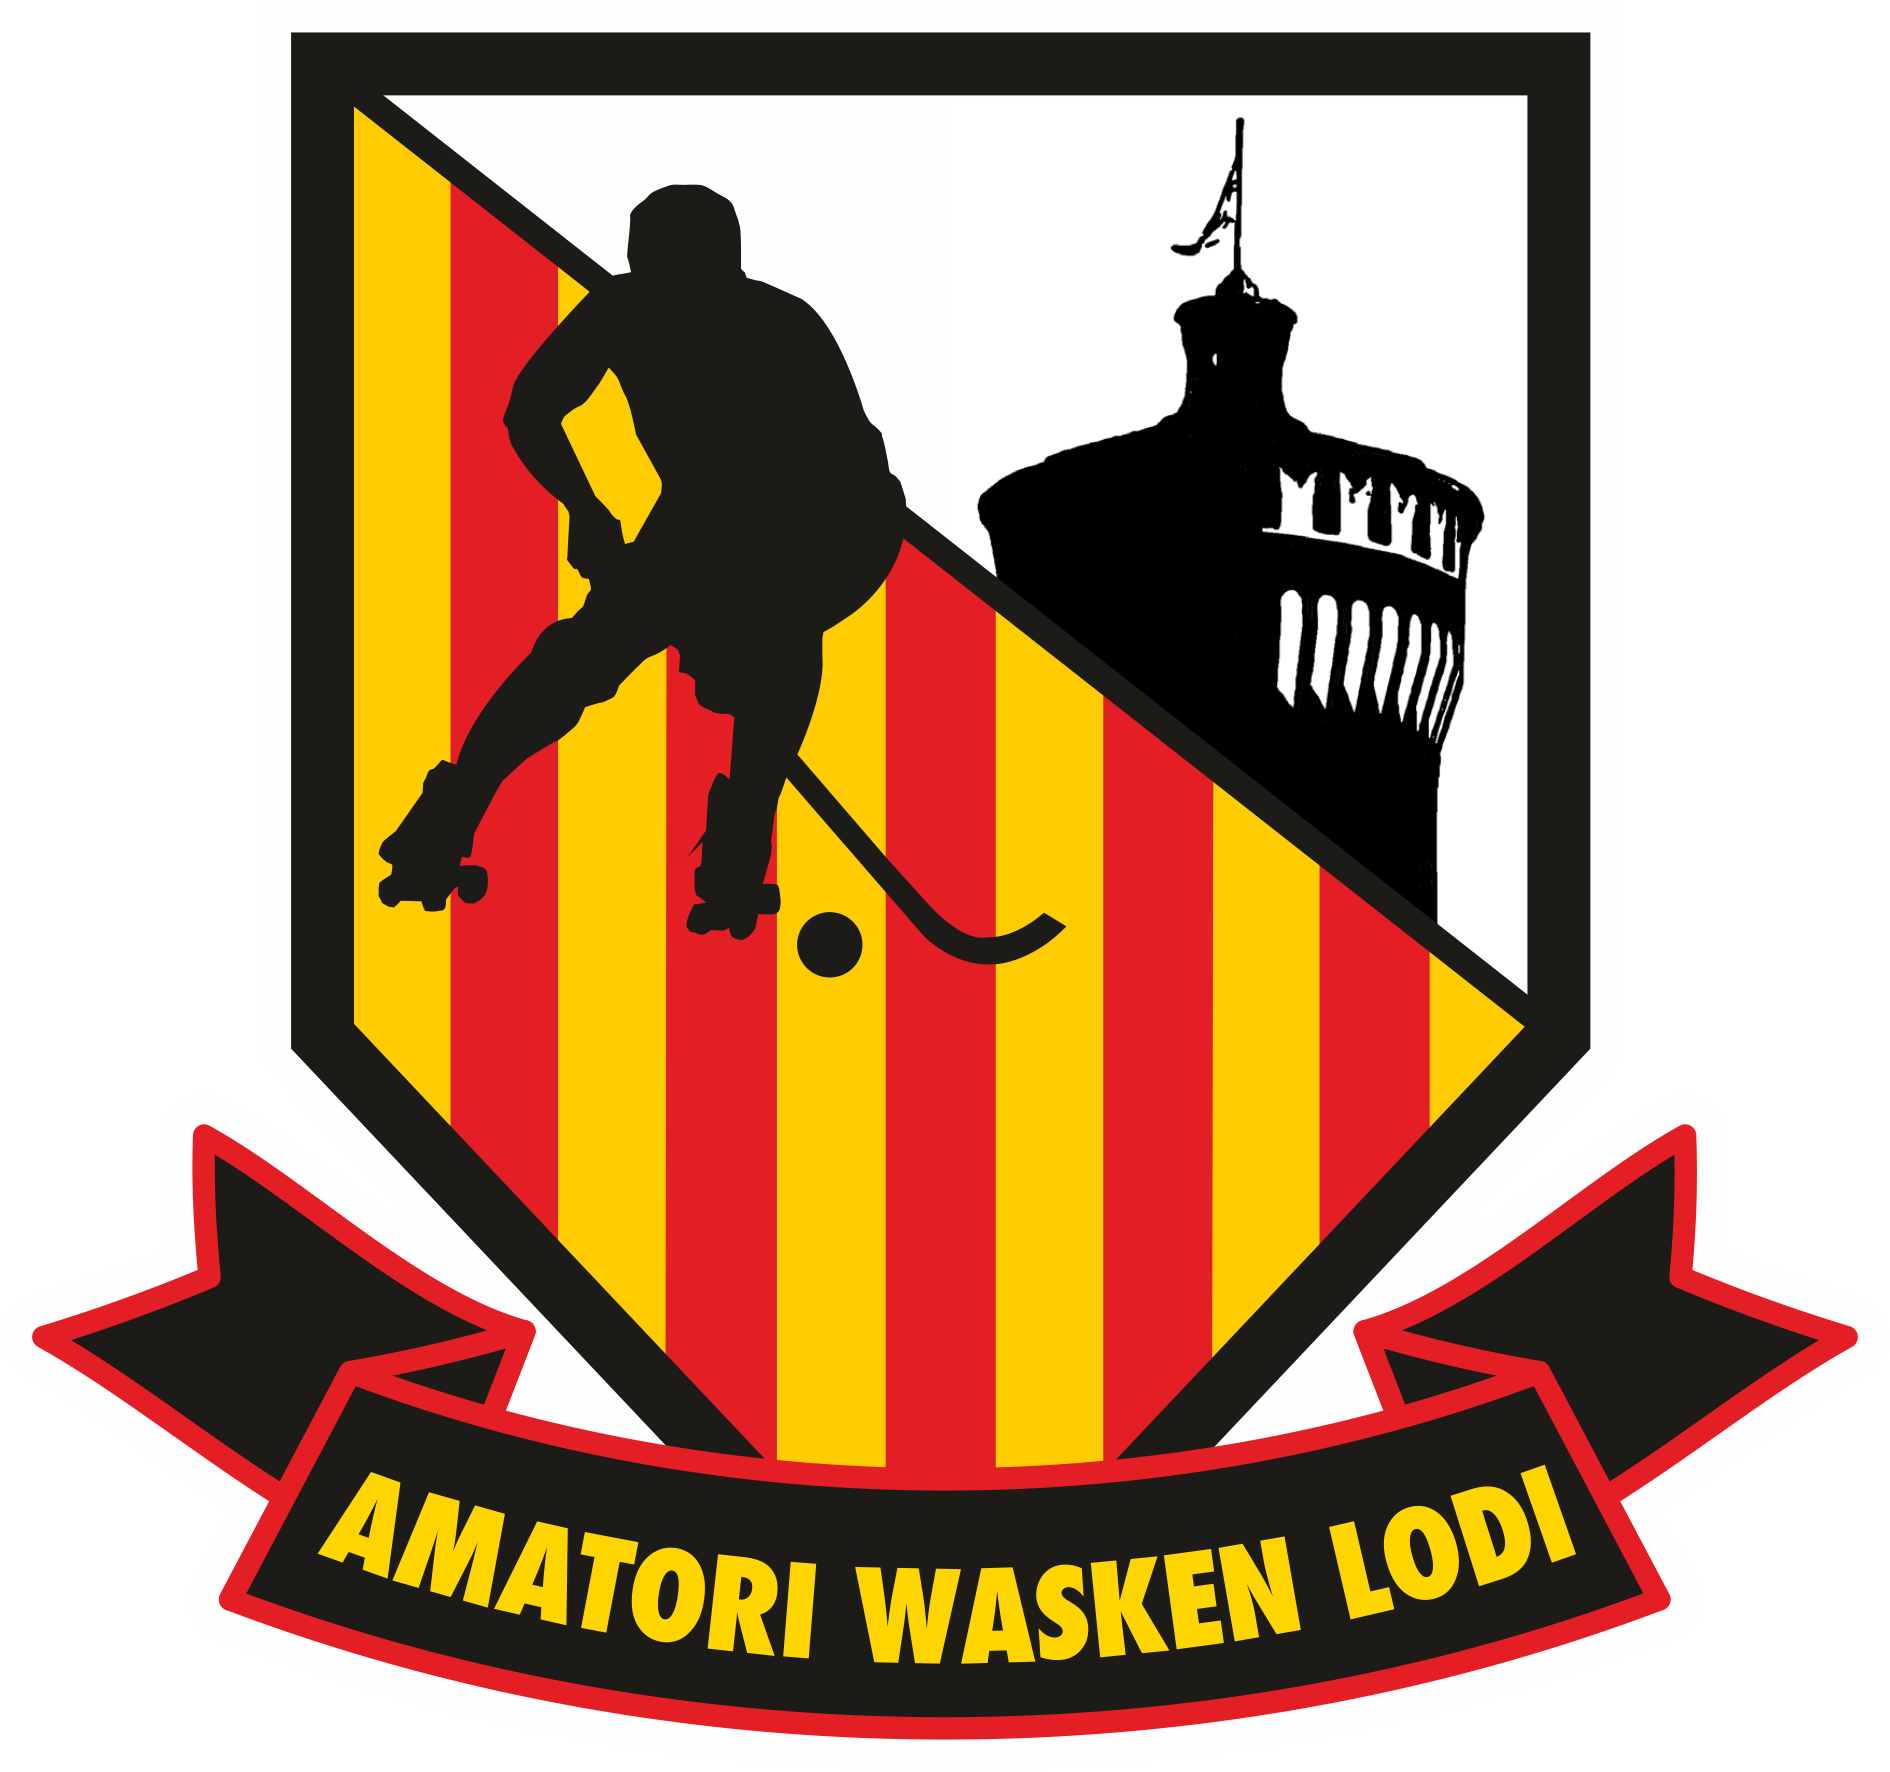 Amatori Wasken Lodi - CLUB WASKEN BOYS a.s.d.